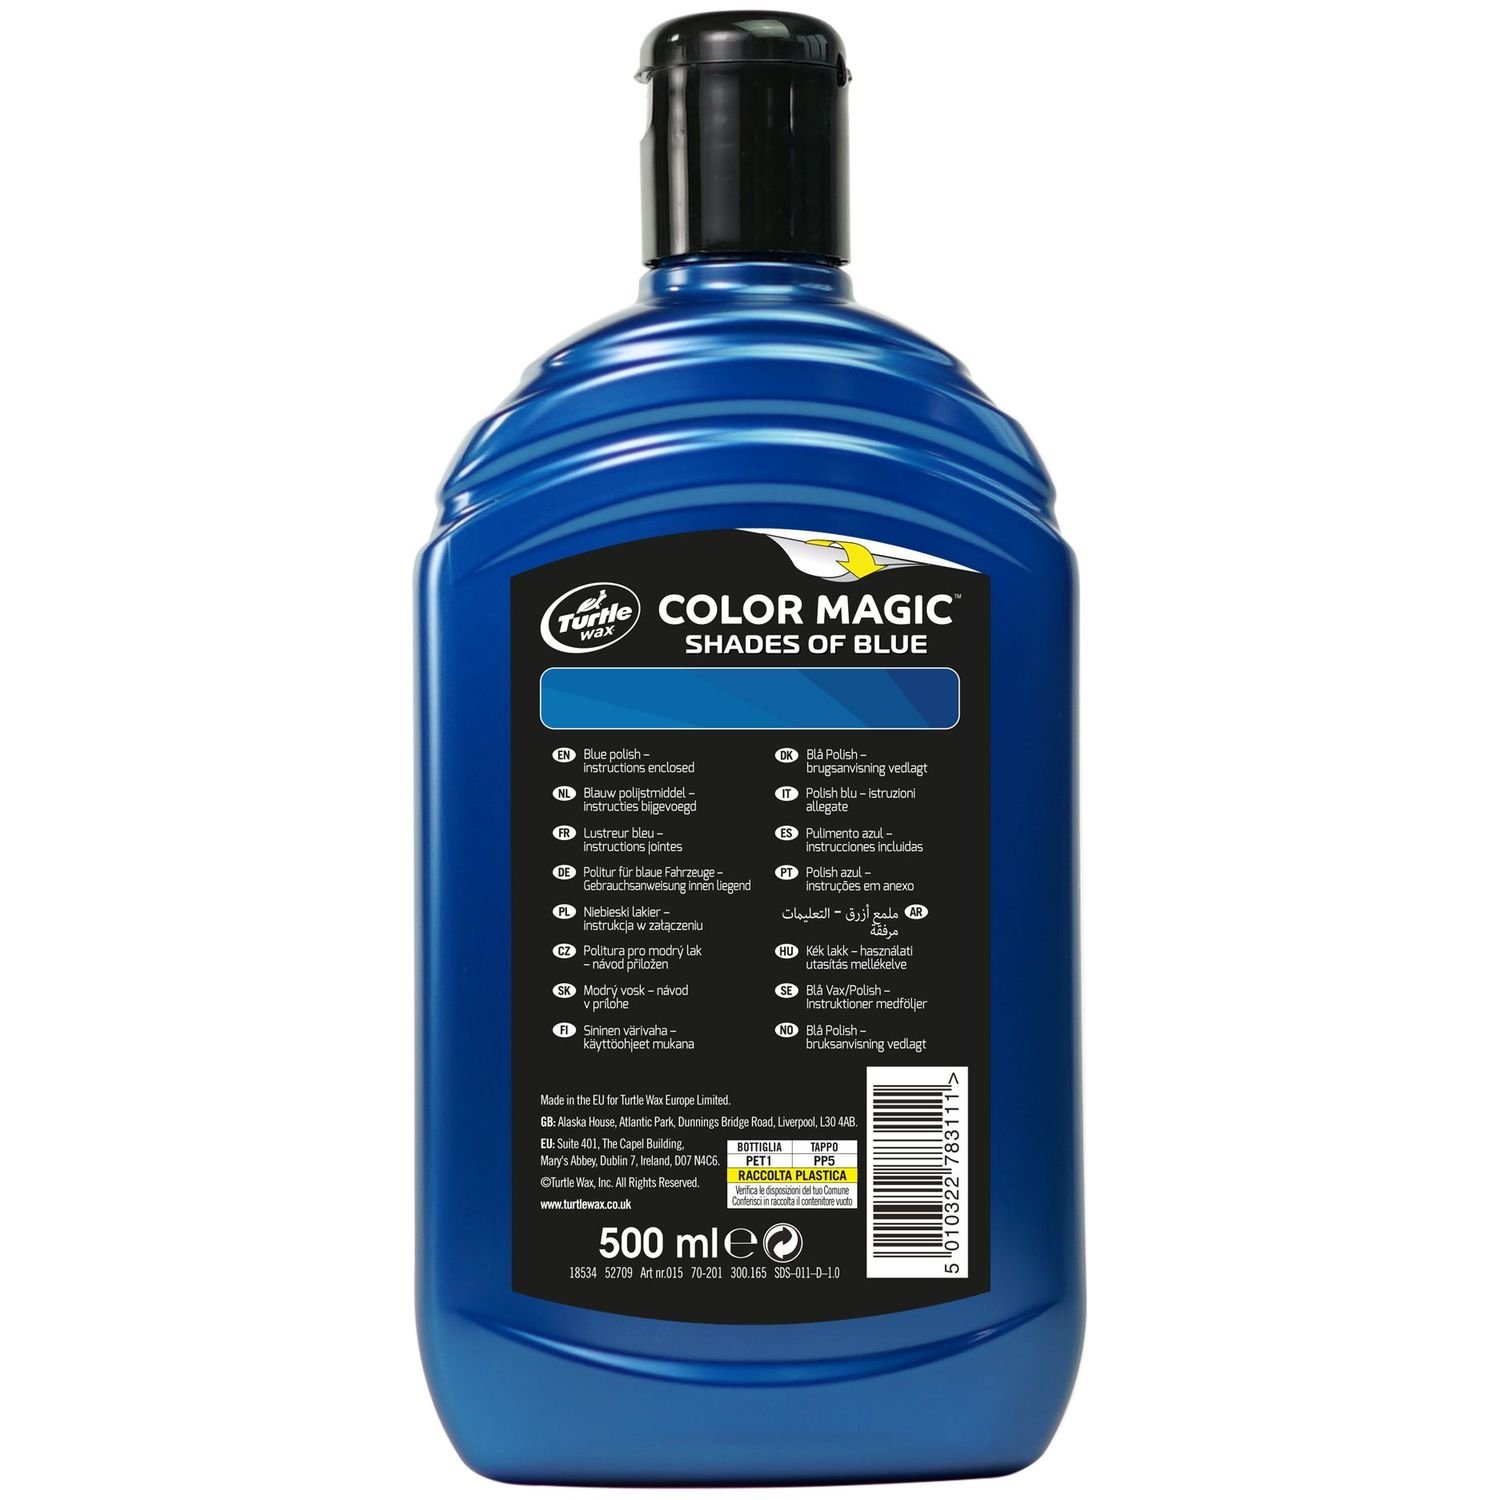 Кольорозбагачена поліроль Turtle Wax, синій Color Magic Extra Fill, 500 мл (52709) - фото 2